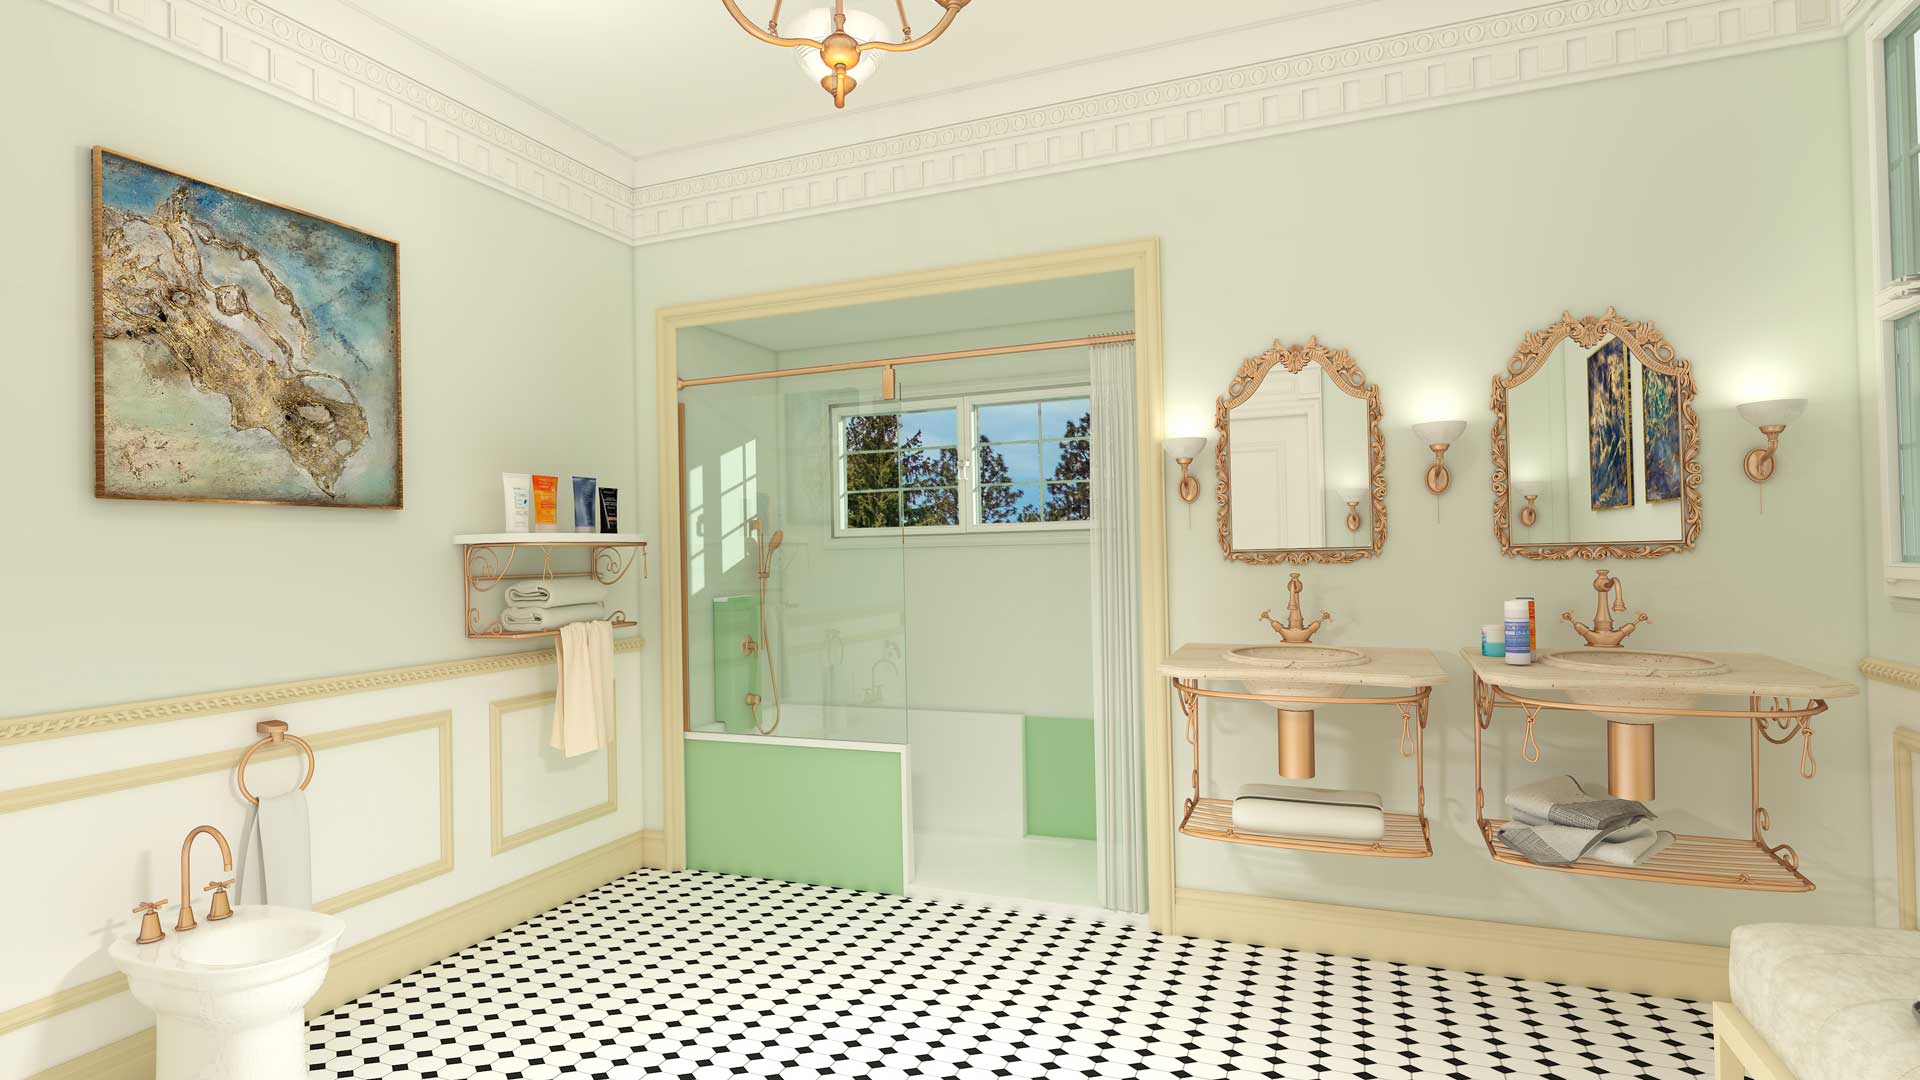 Une douche à l'italienne dans une salle de bain de style rétro baroque